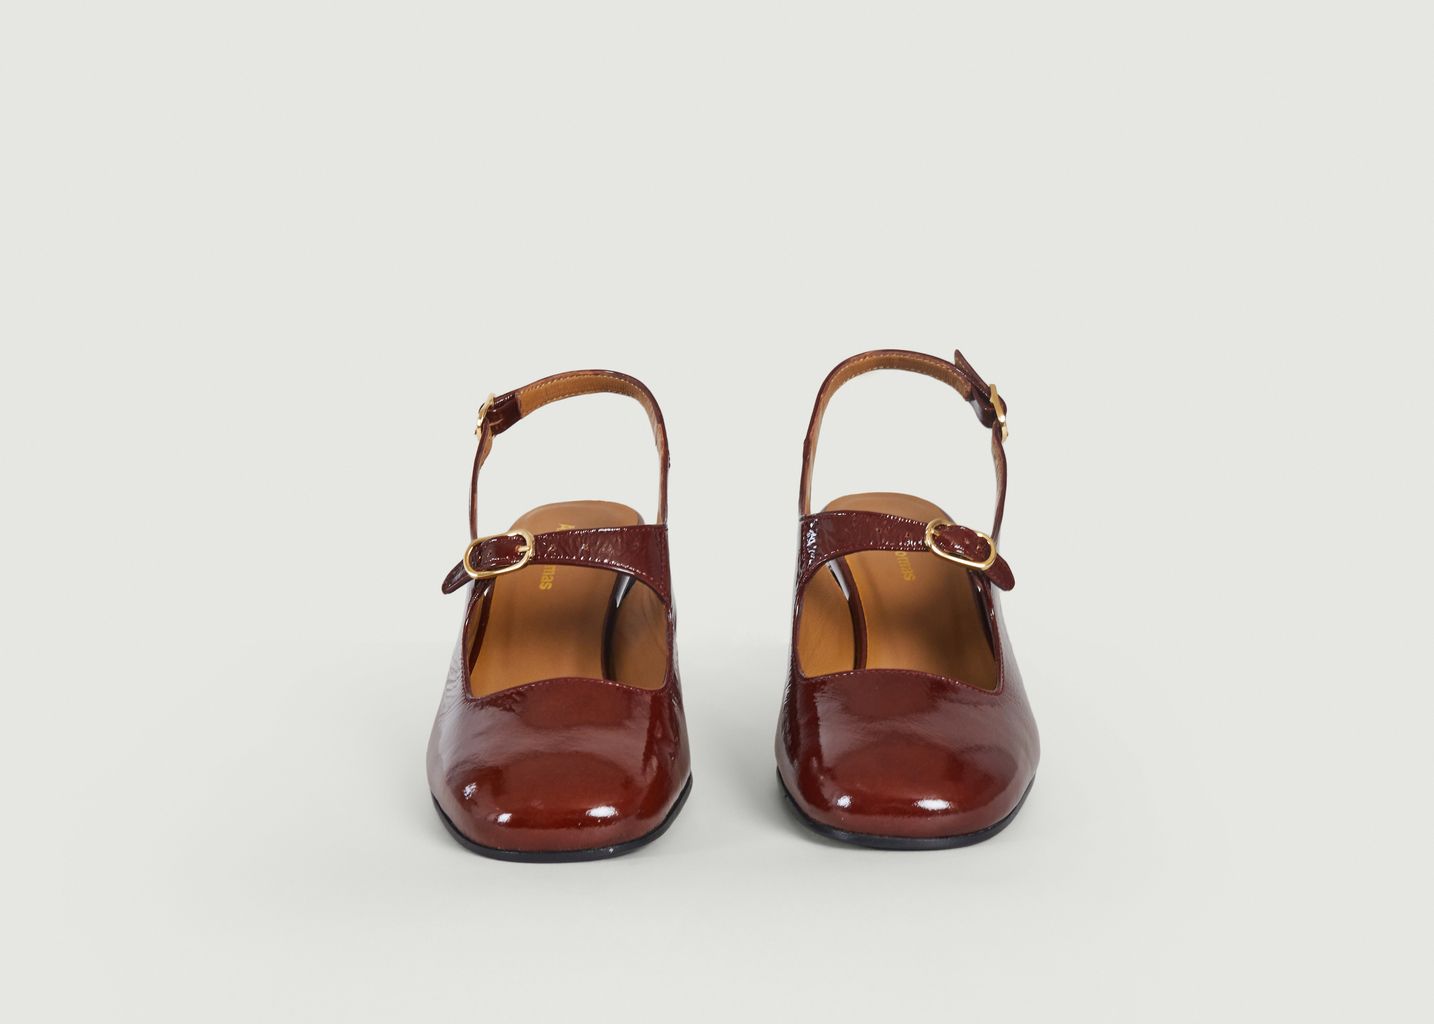 Venzia Babies - Anne Thomas Chaussures